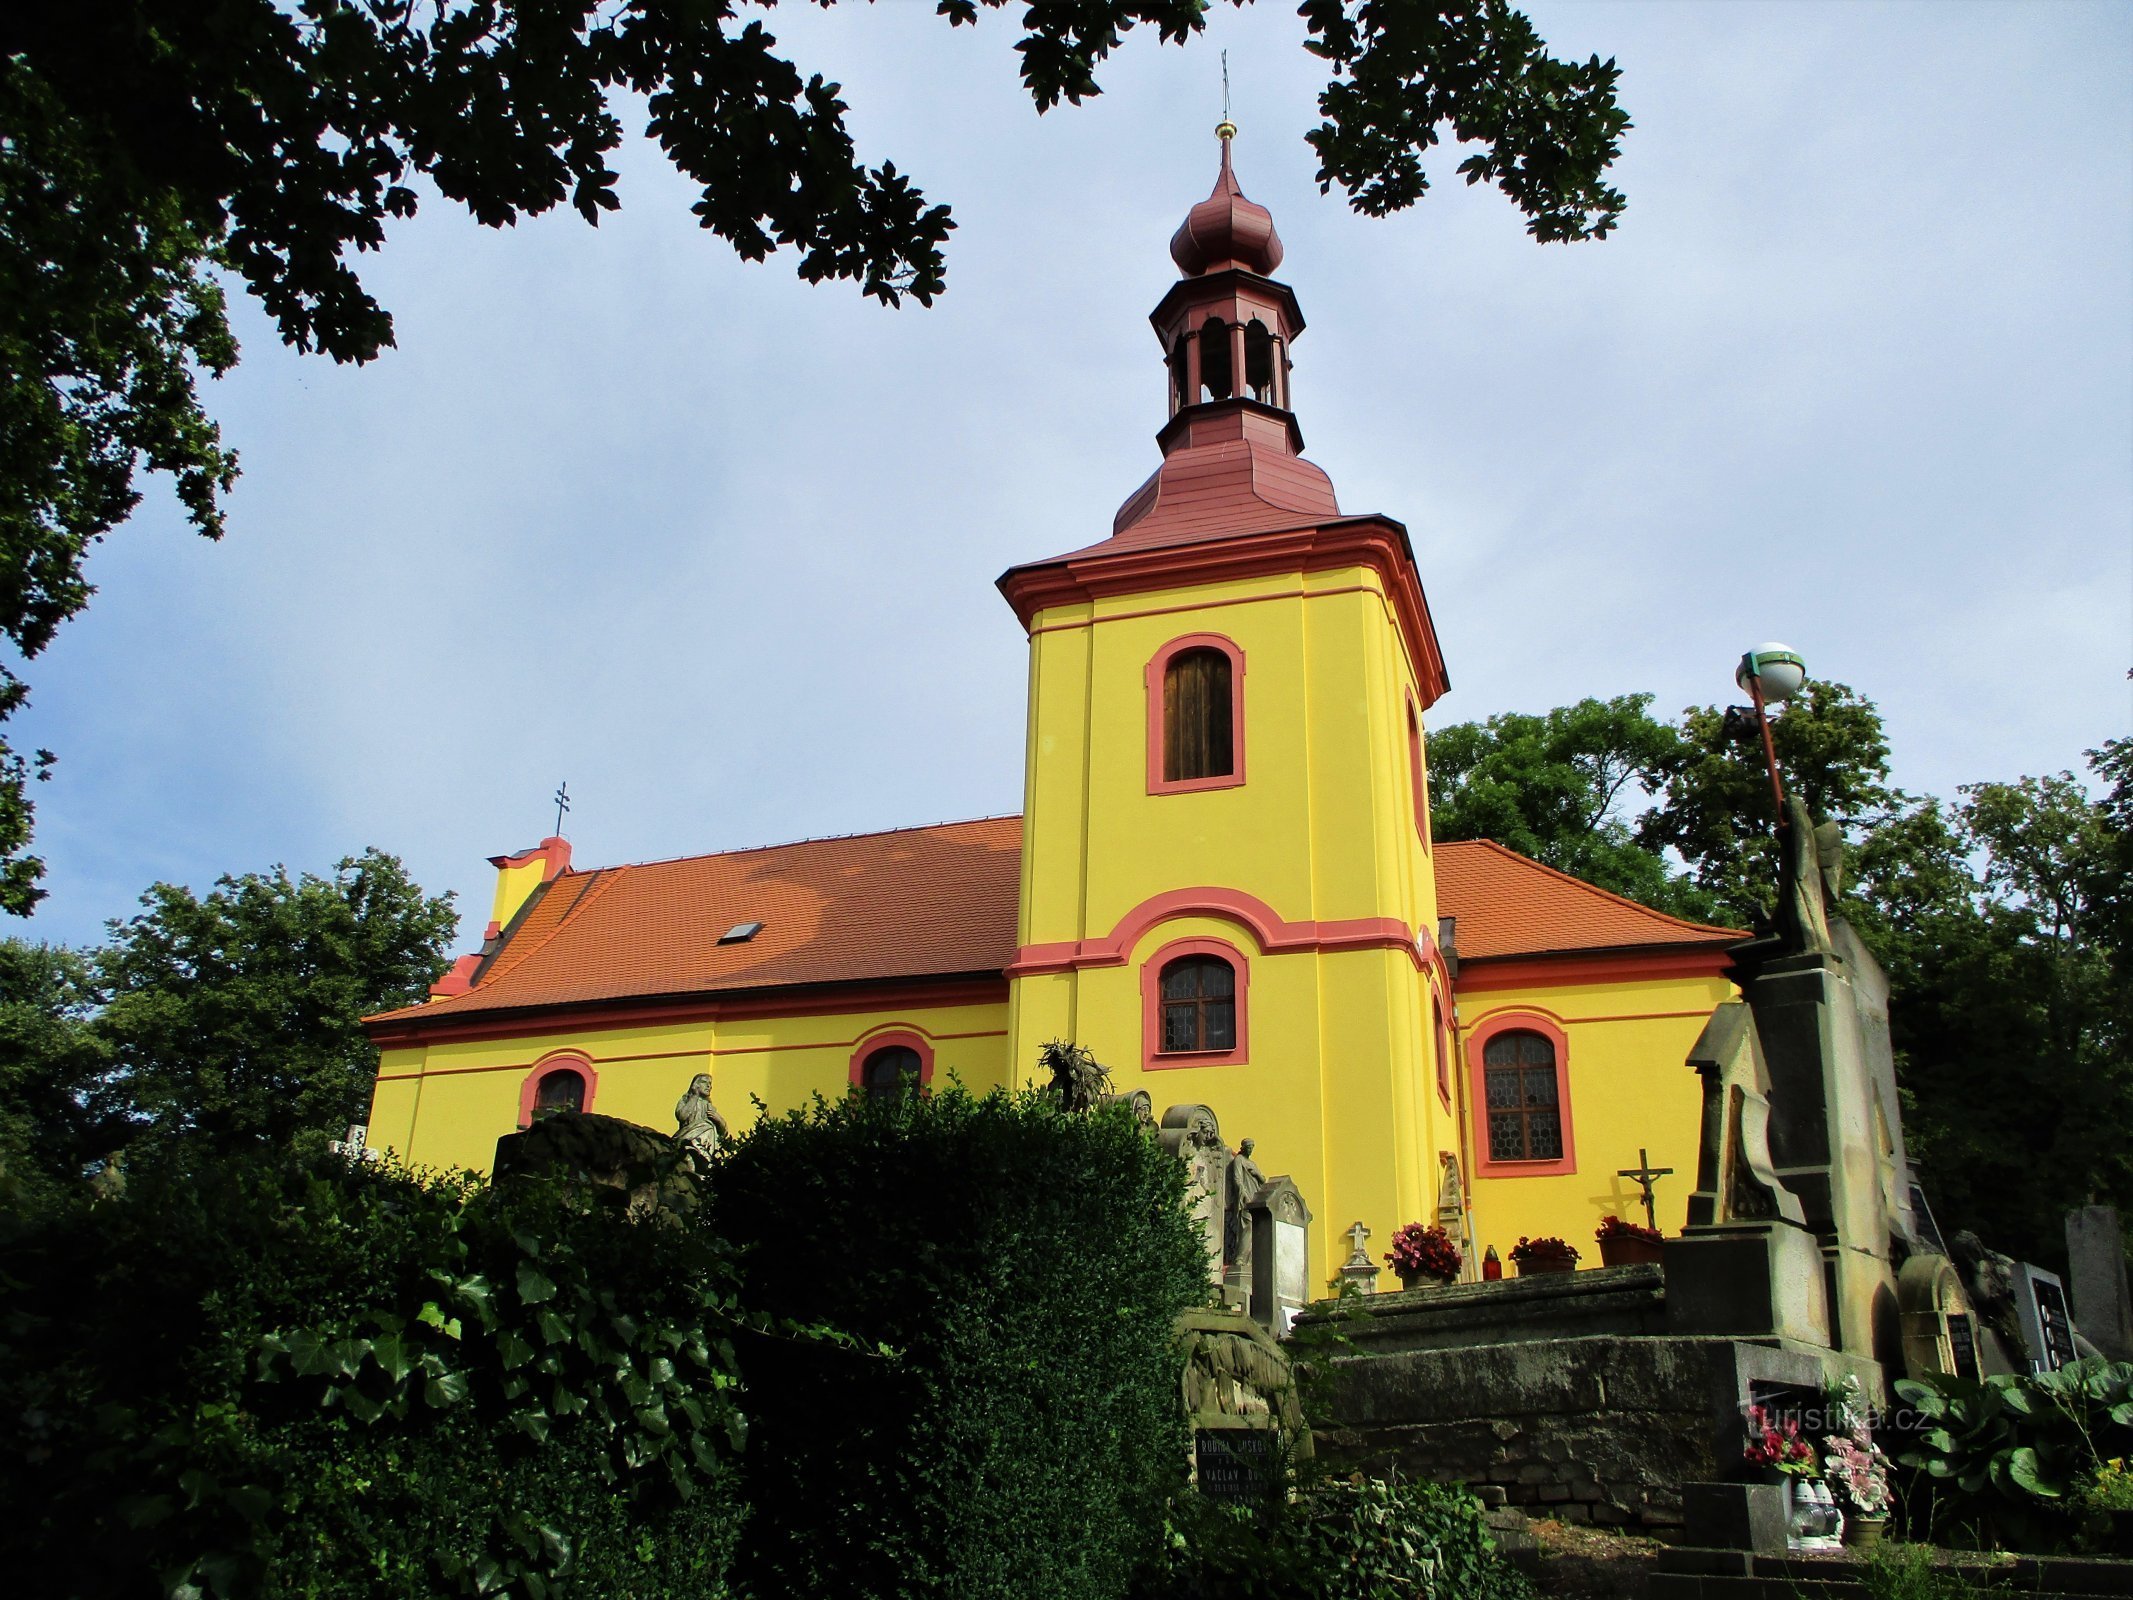 Hřbitovní kostel sv. Gotharda, biskupa (Hořice, 26.7.2020)